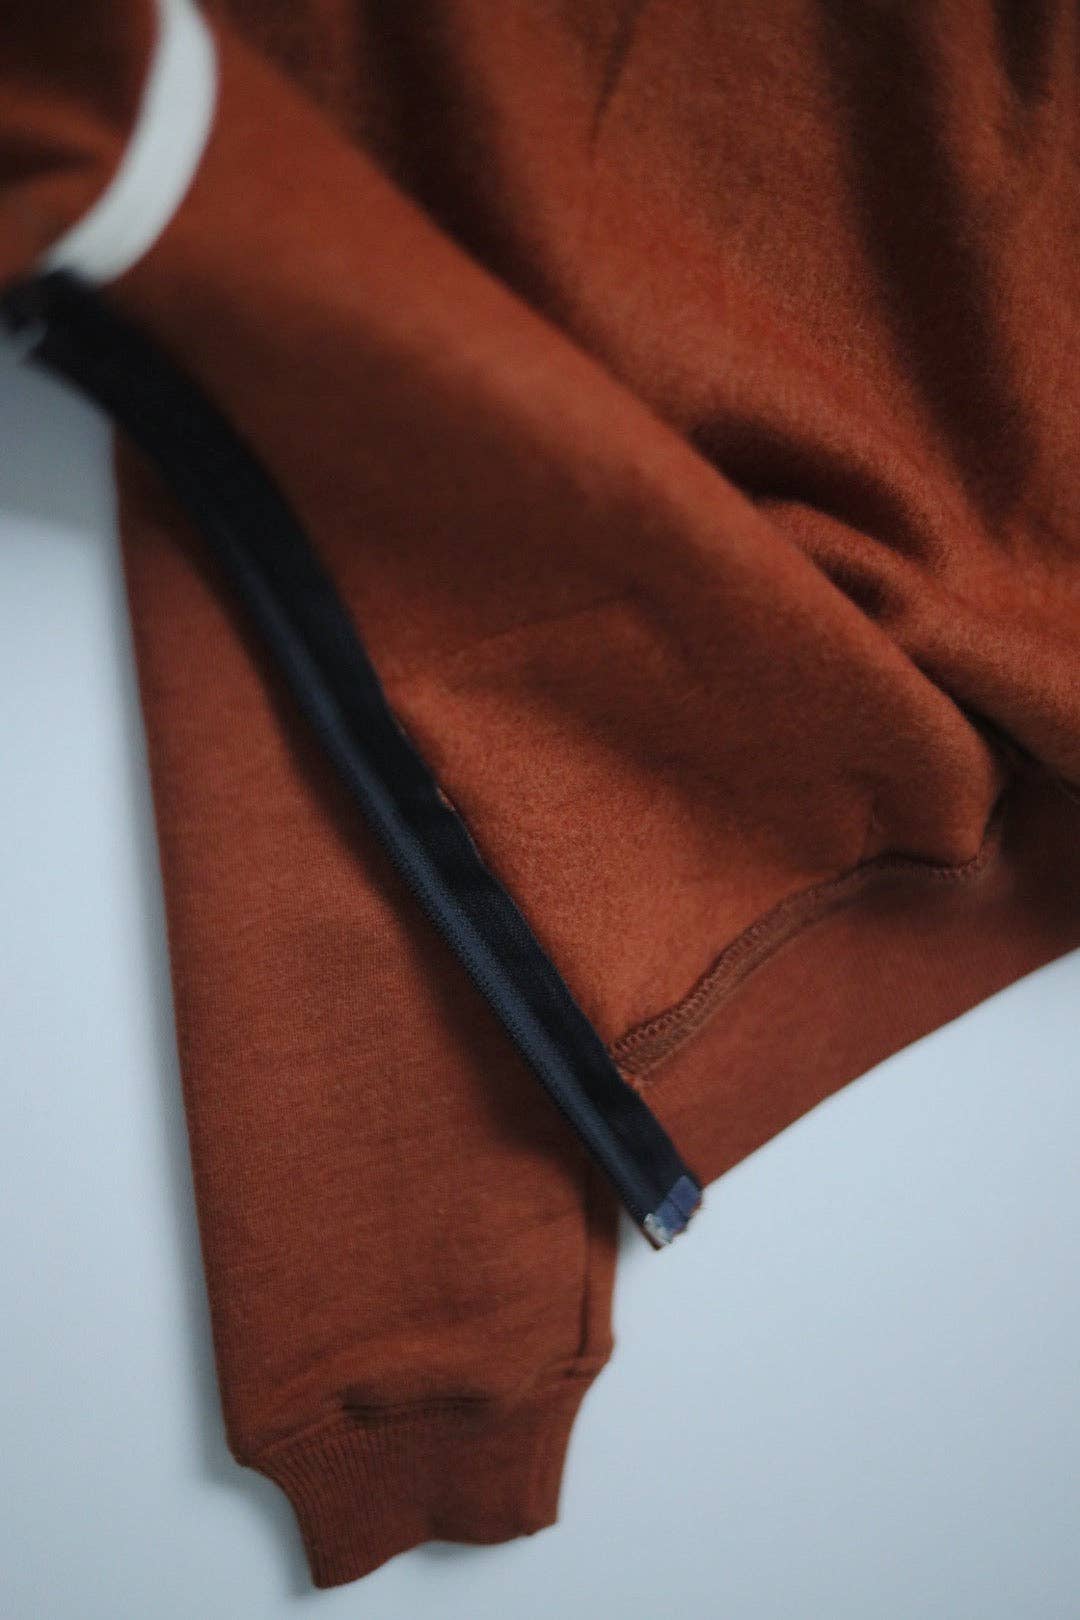 Organic cotton zip up hoodie / Rust